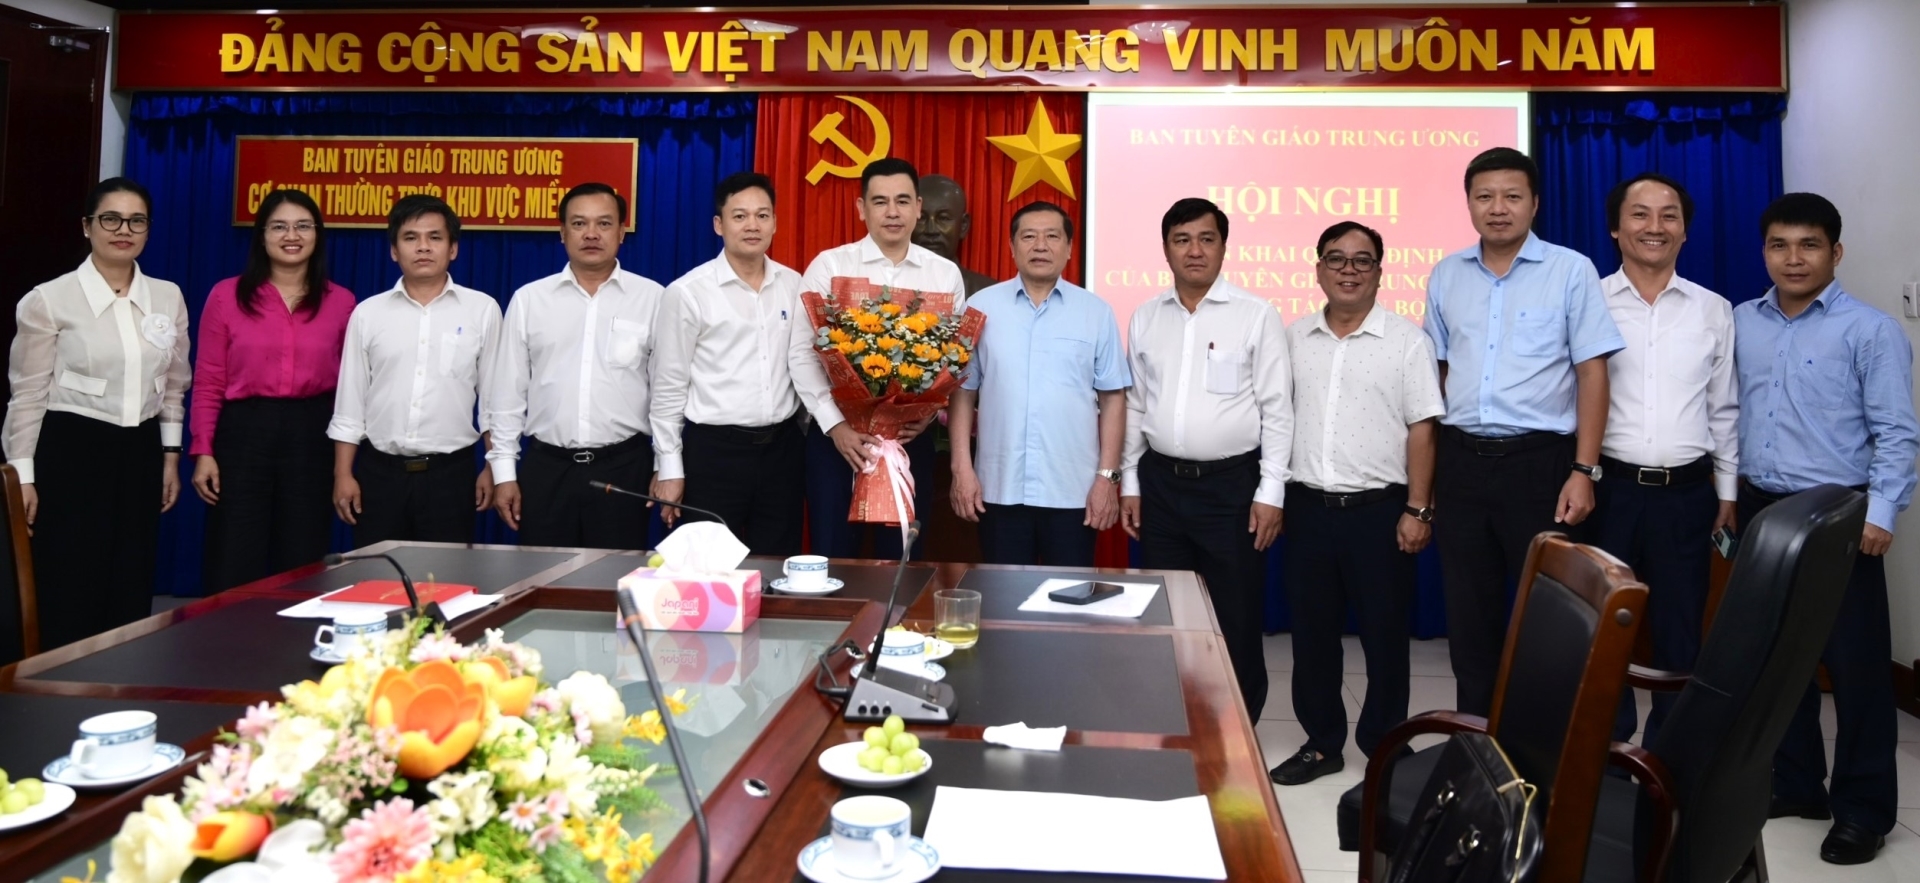 Đồng chí Lại Xuân Môn và lãnh đạo, cán bộ công chức Cơ quan thường trực khu vực miền Nam tặng hoa chúc mừng đồng chí Phạm Quý Trọng.